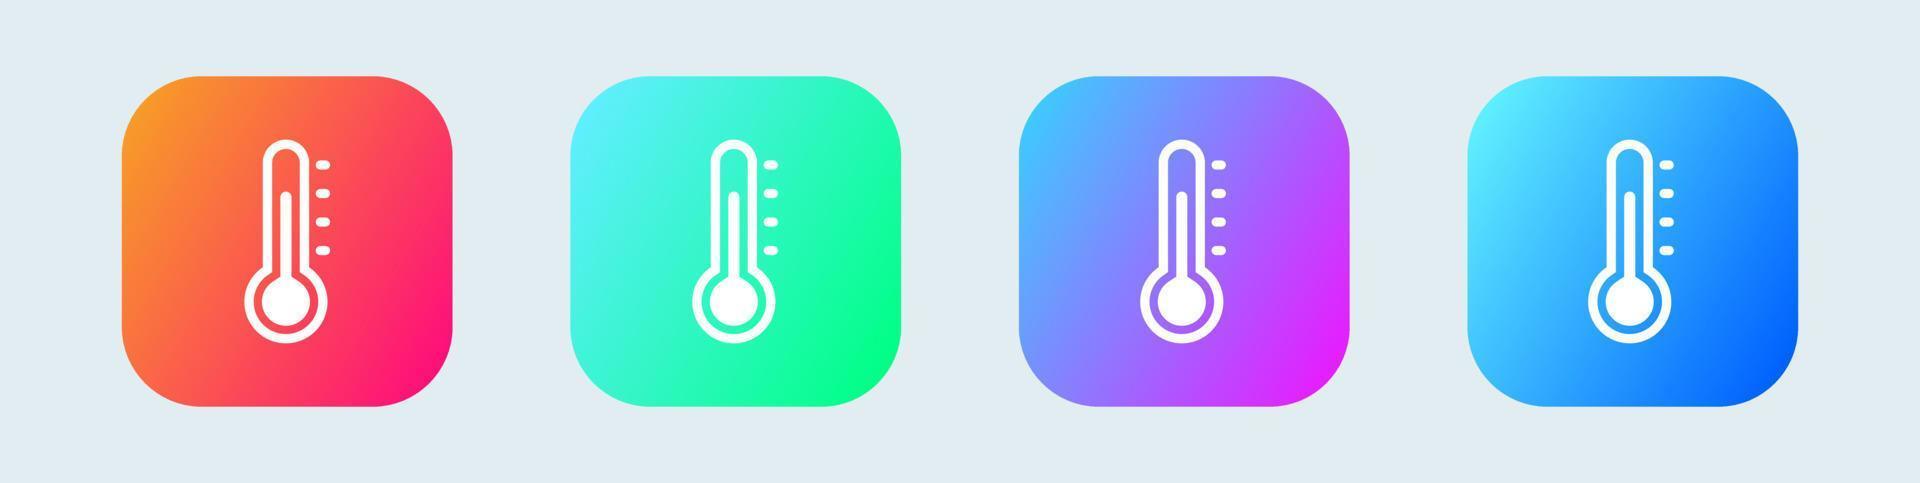 ícone de medição de temperatura do termômetro em cores gradientes. ilustração vetorial. vetor